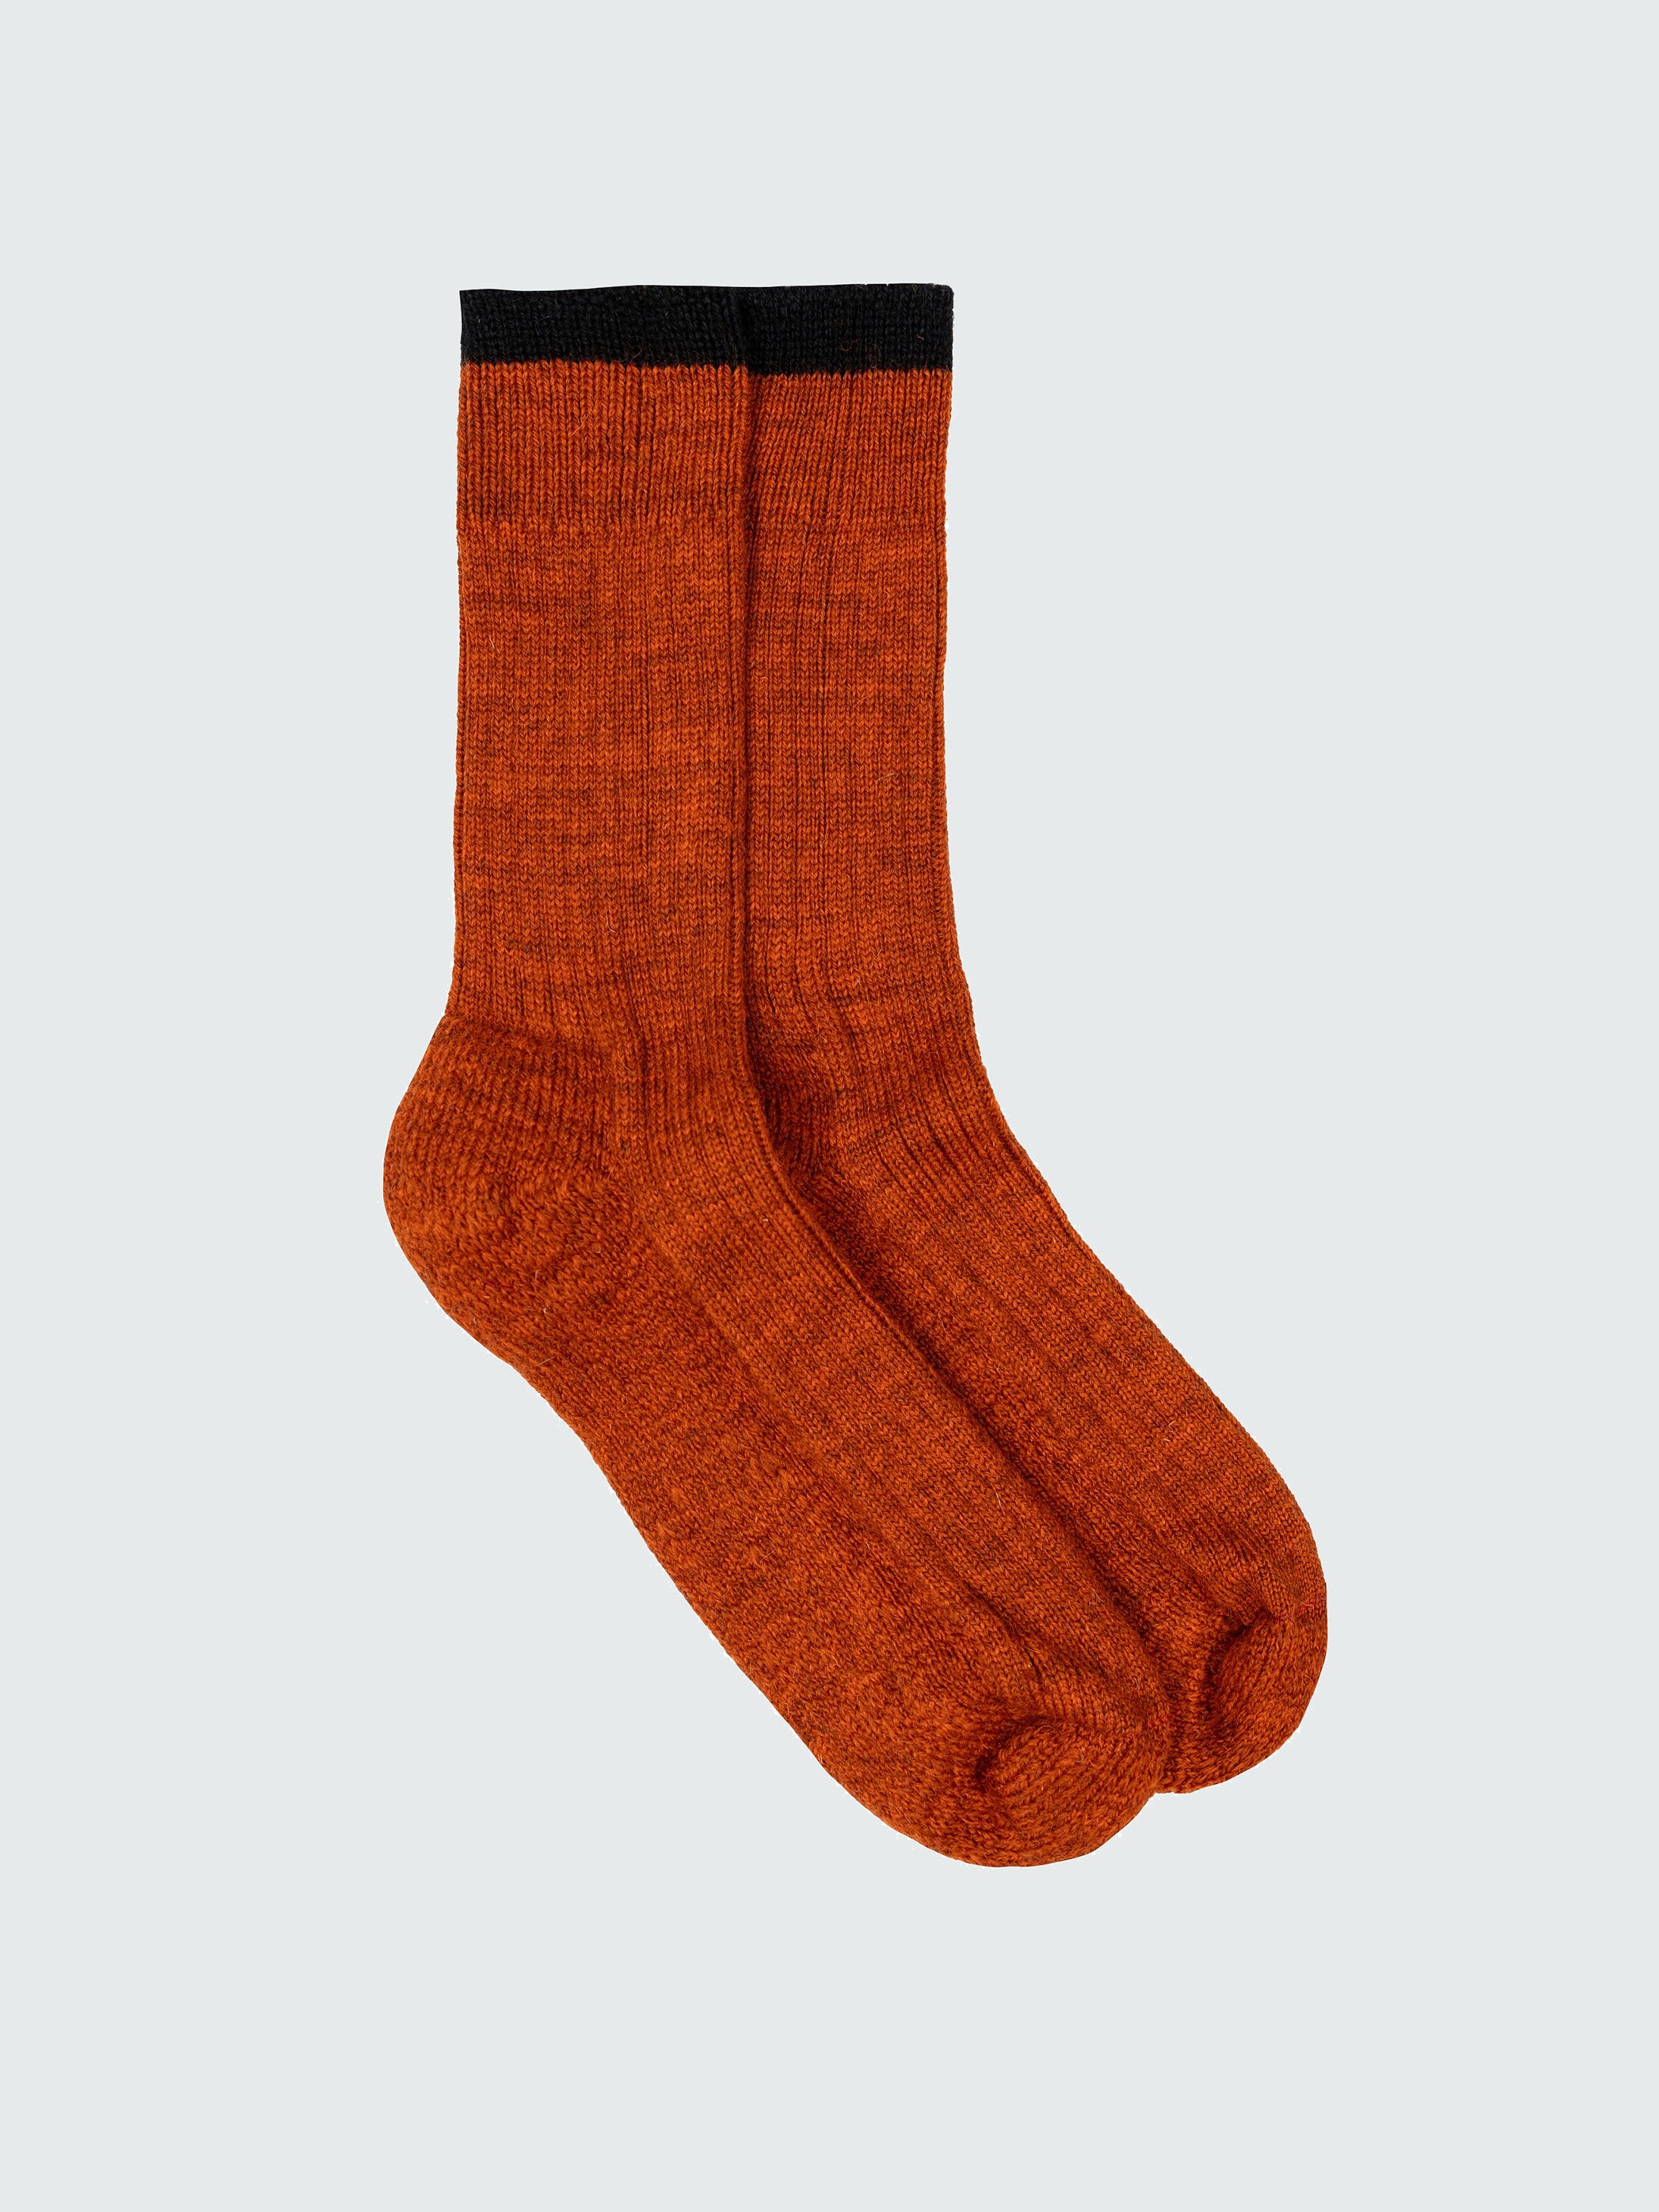 Bosun Sock in Burnt Orange/Black | Finisterre